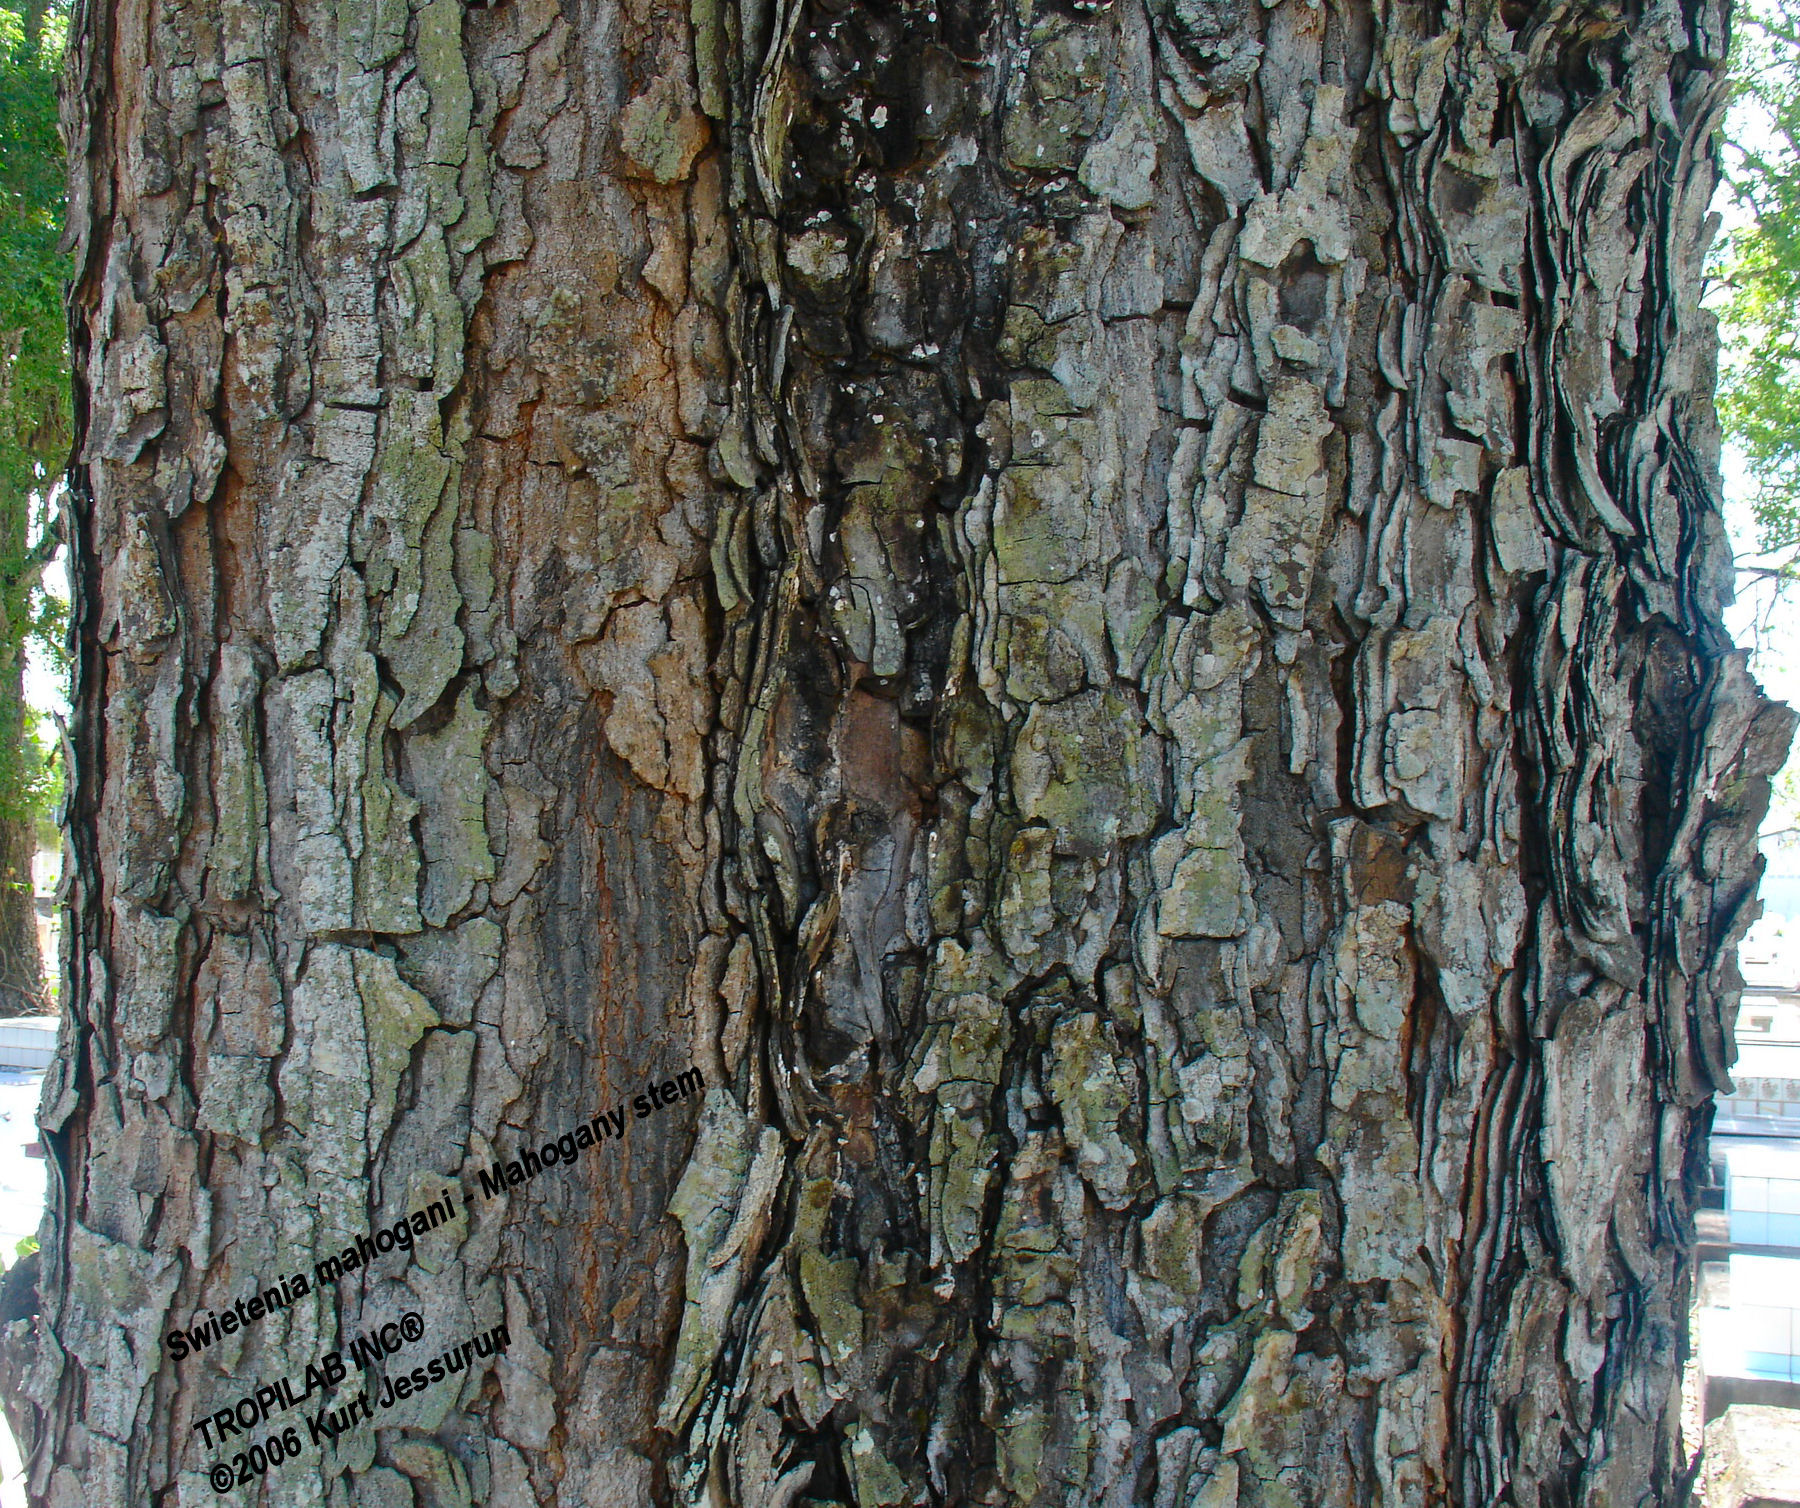 Swietenia mahogany stem